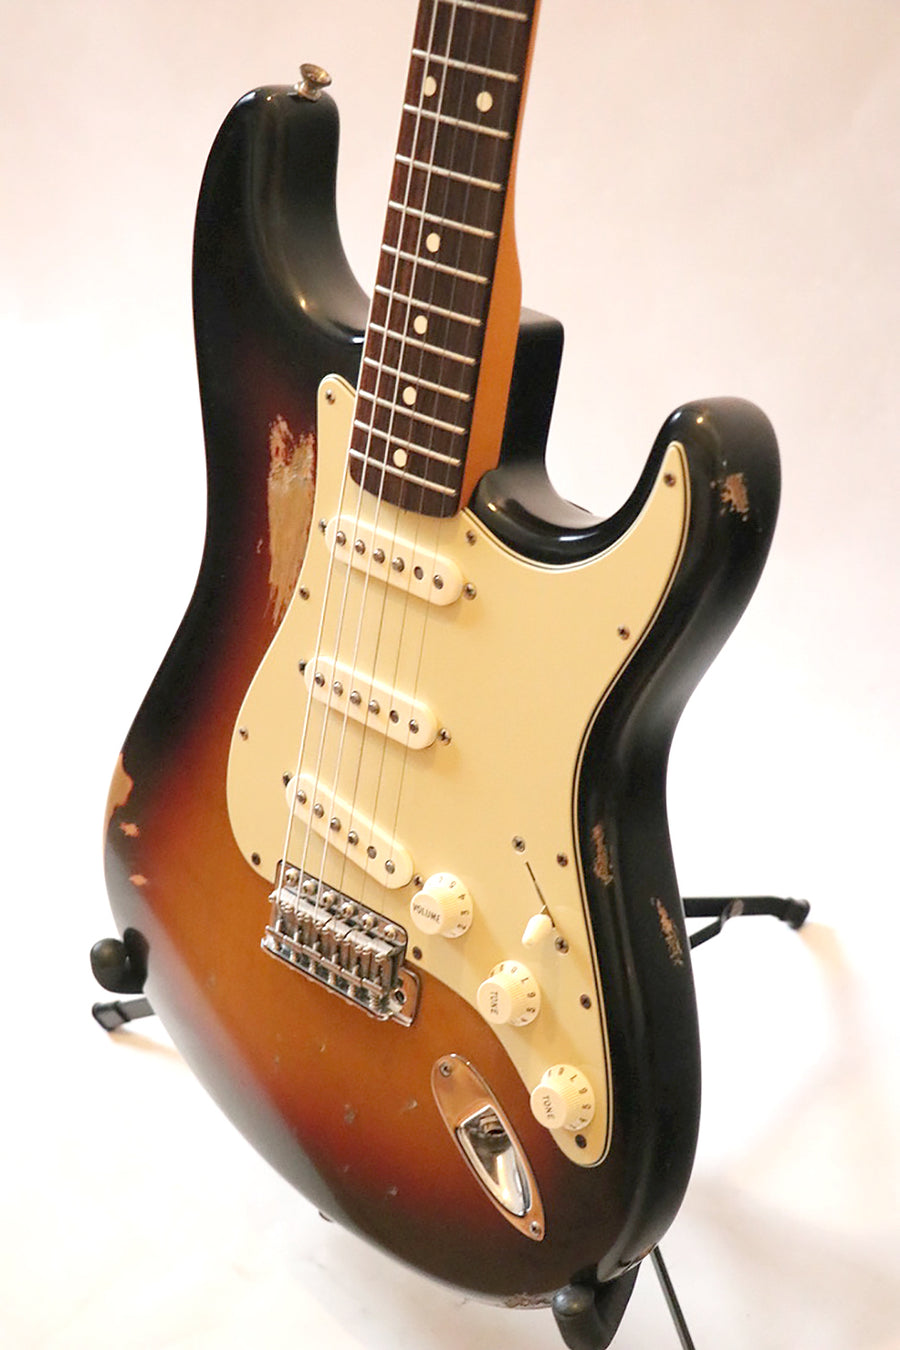 Fender American Vintage '62 Stratocaster